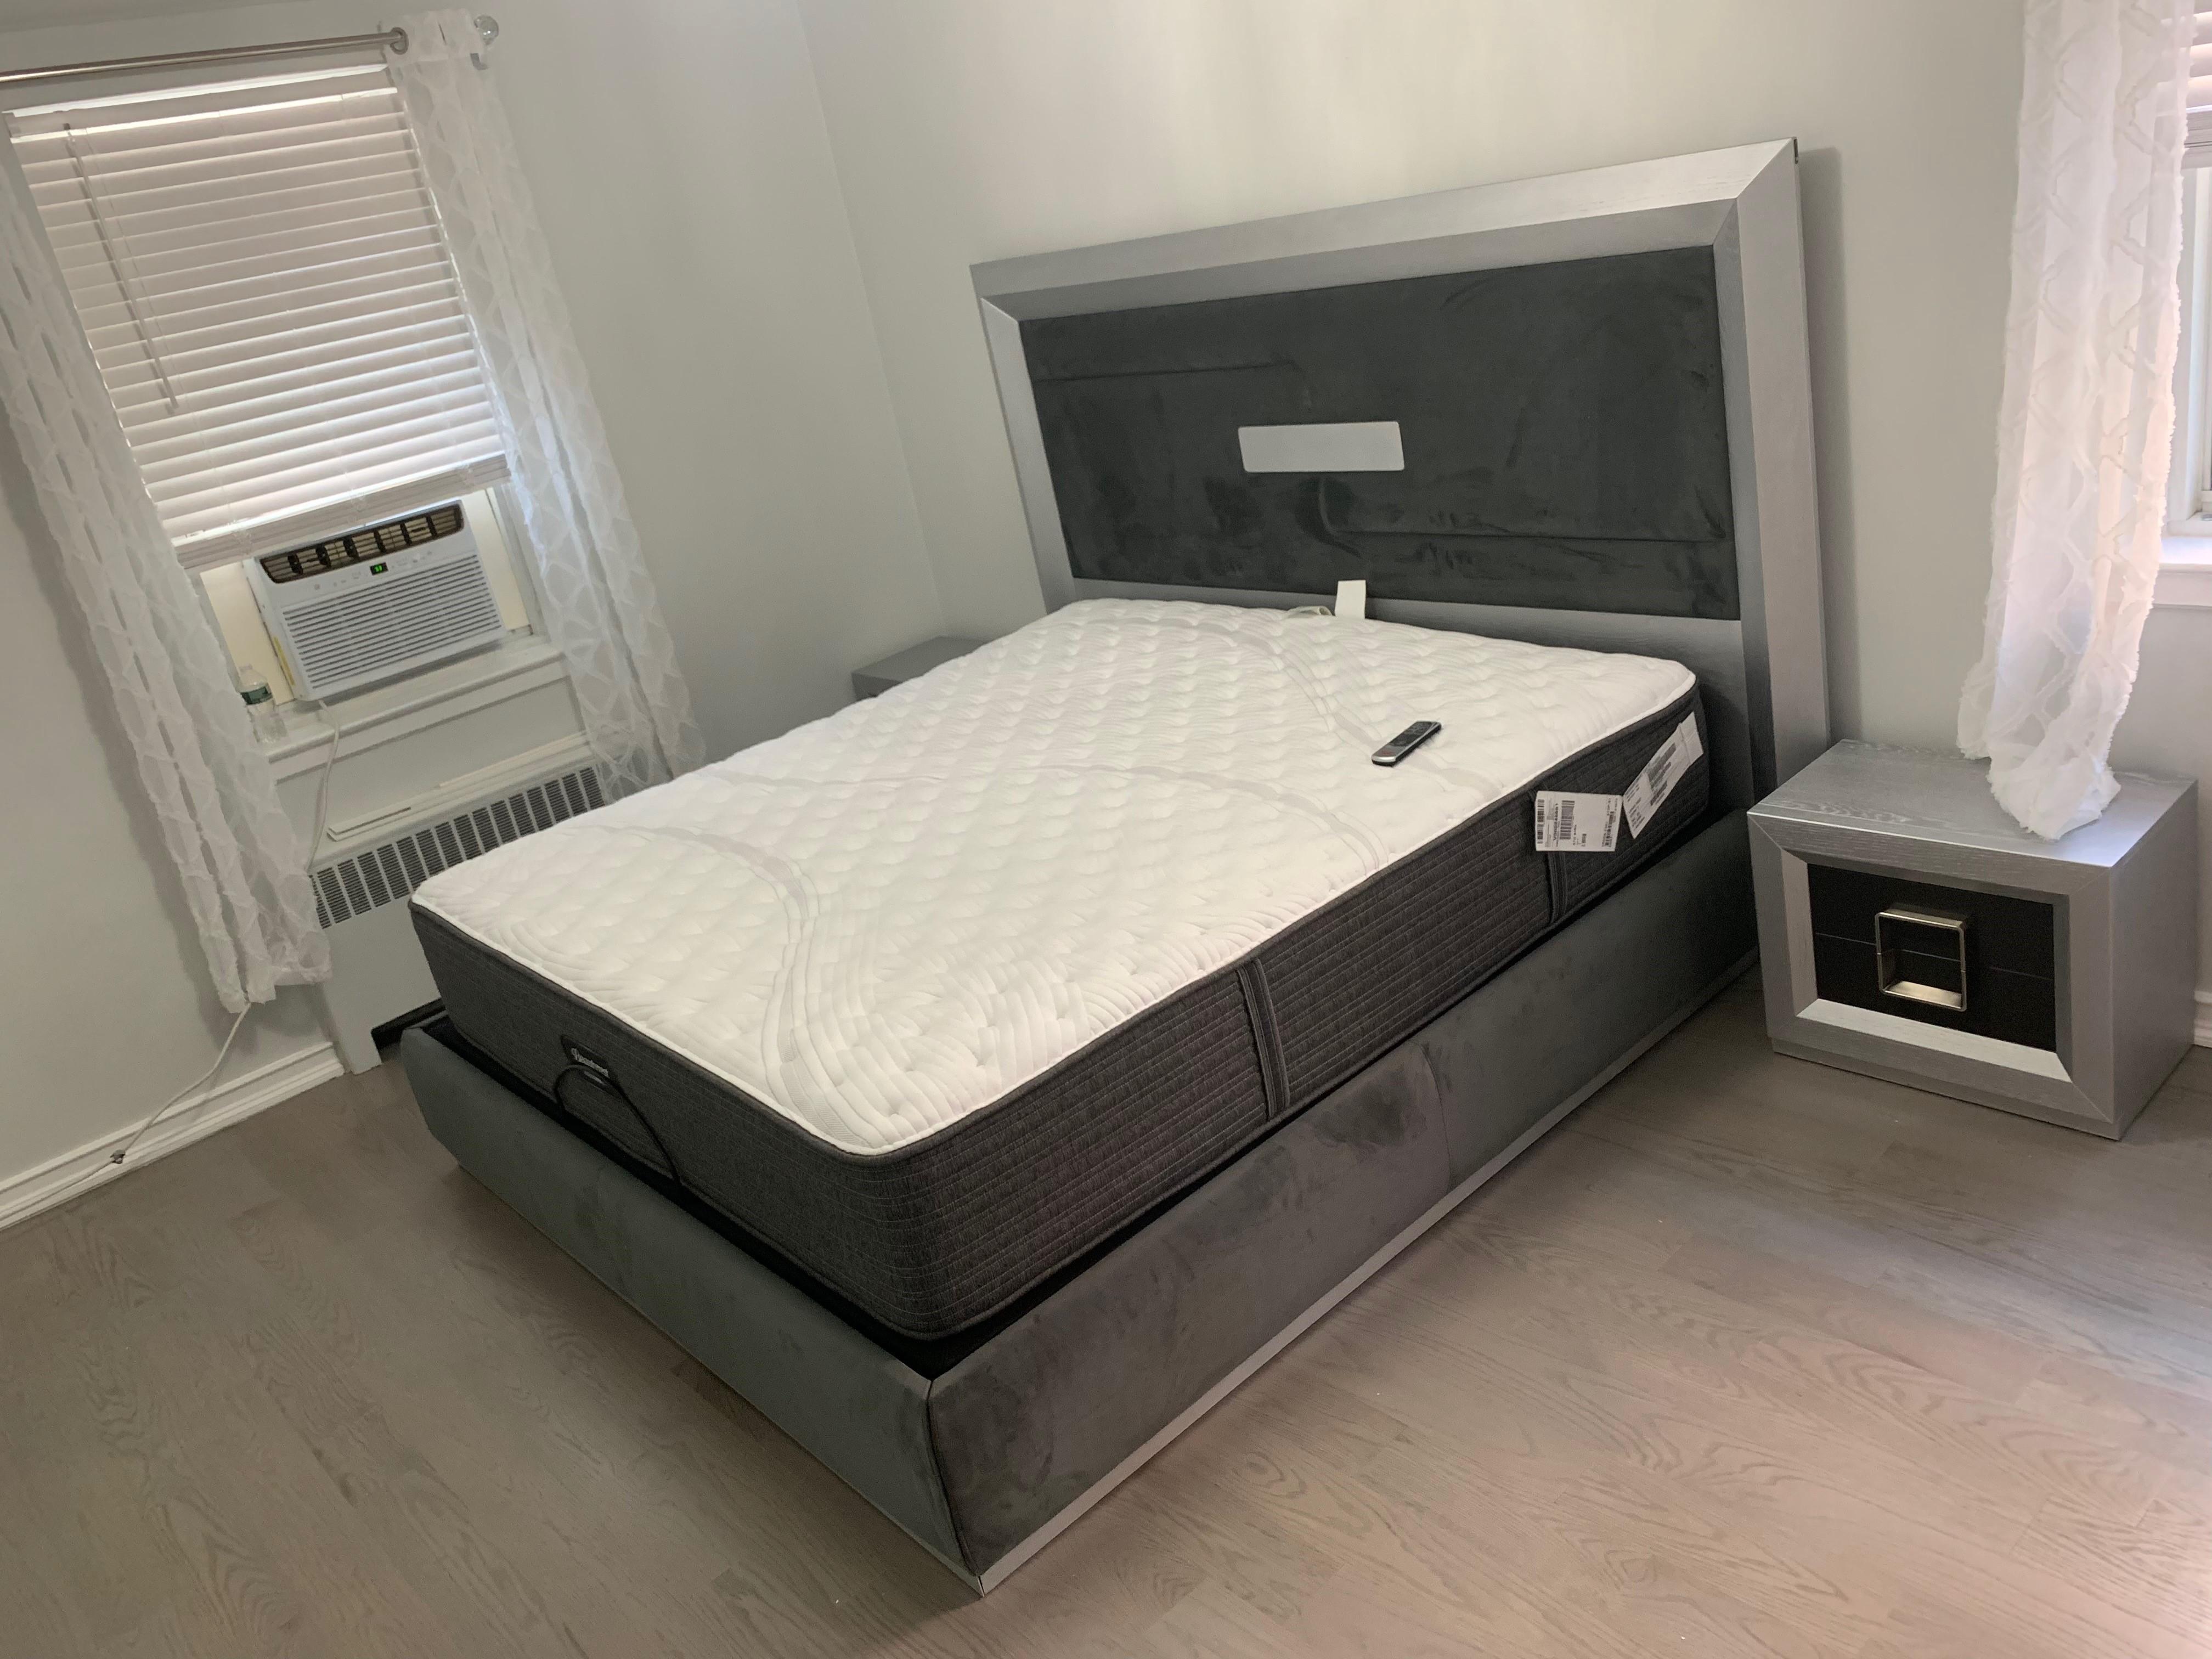 

    
ENZOBEDKS-2N-3P ESF Platform Bedroom Set
